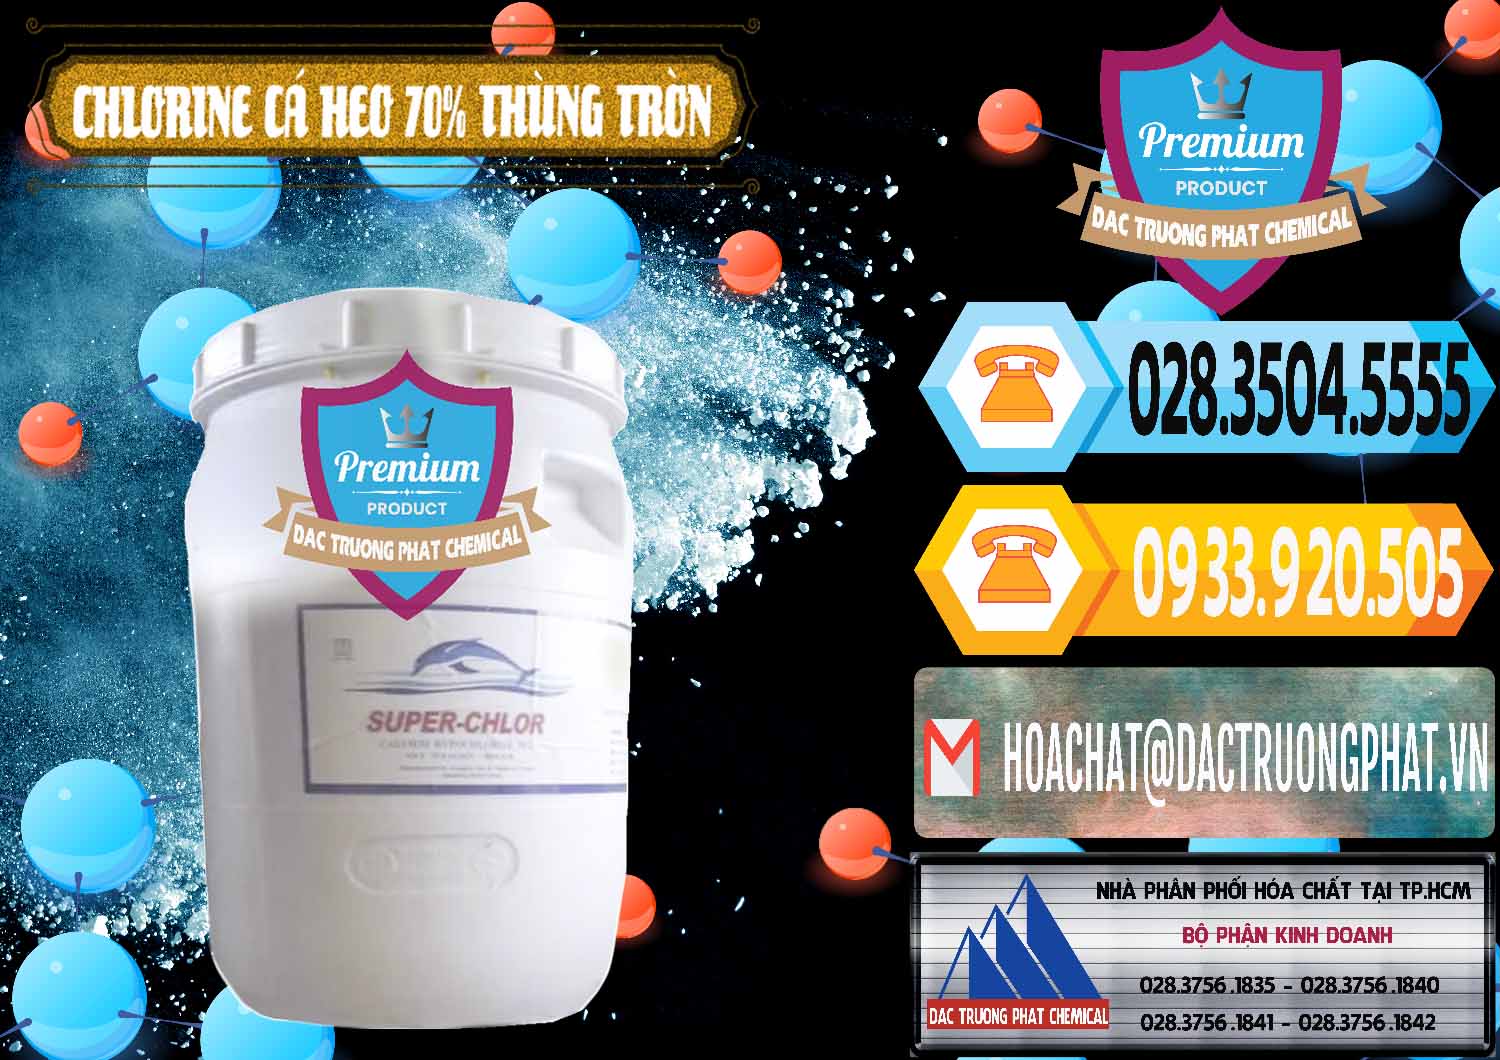 Cty bán - cung cấp Clorin - Chlorine Cá Heo 70% Super Chlor Thùng Tròn Nắp Trắng Trung Quốc China - 0239 - Đơn vị cung cấp và phân phối hóa chất tại TP.HCM - hoachattayrua.net